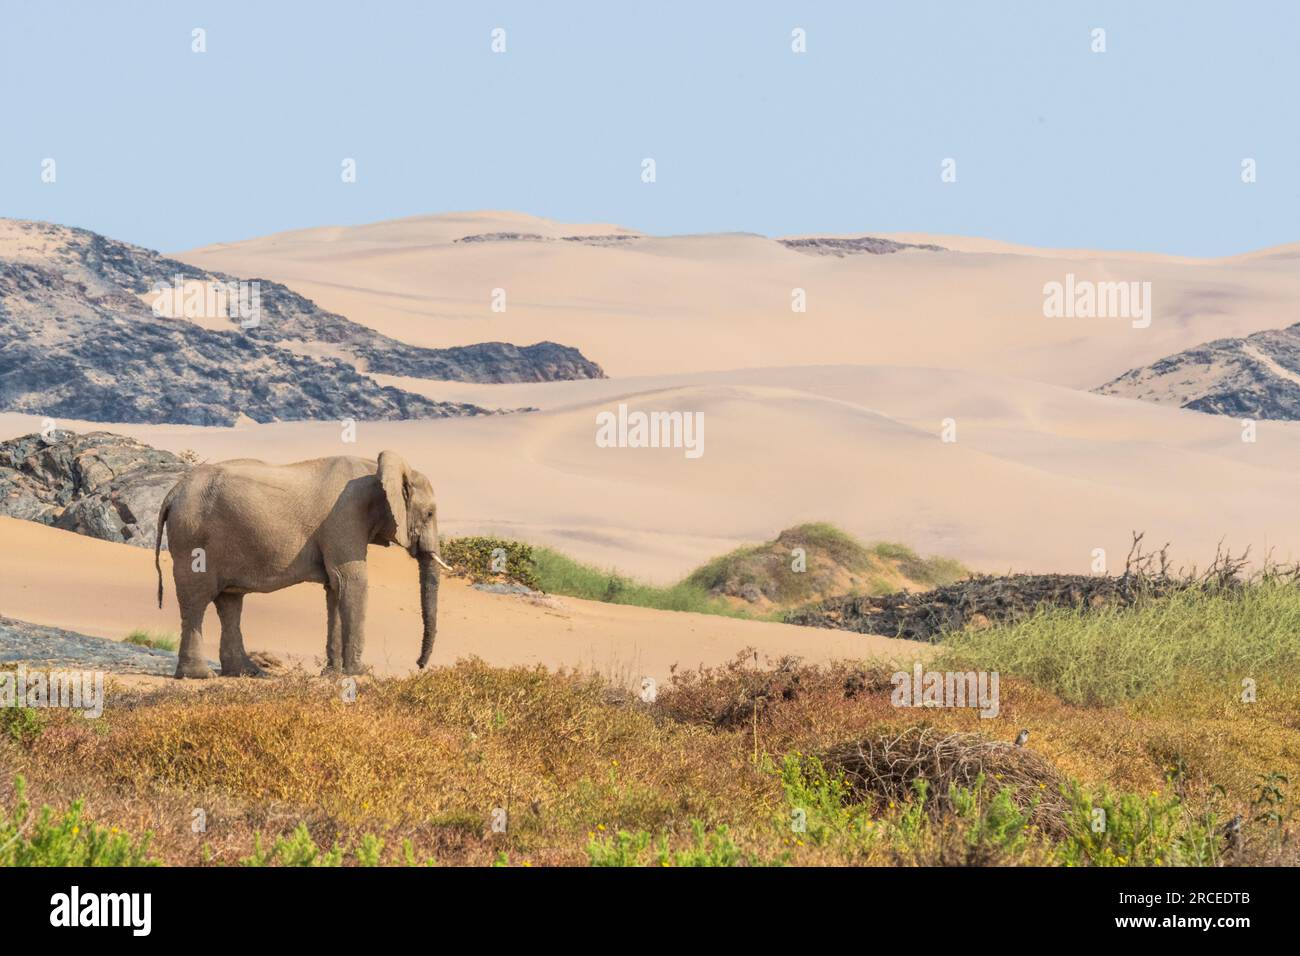 Les éléphants africains adaptés au désert en Namibie se sont adaptés à leur environnement sec et semi-désertique en ayant une masse corporelle plus petite avec des jambes plus longues. Banque D'Images